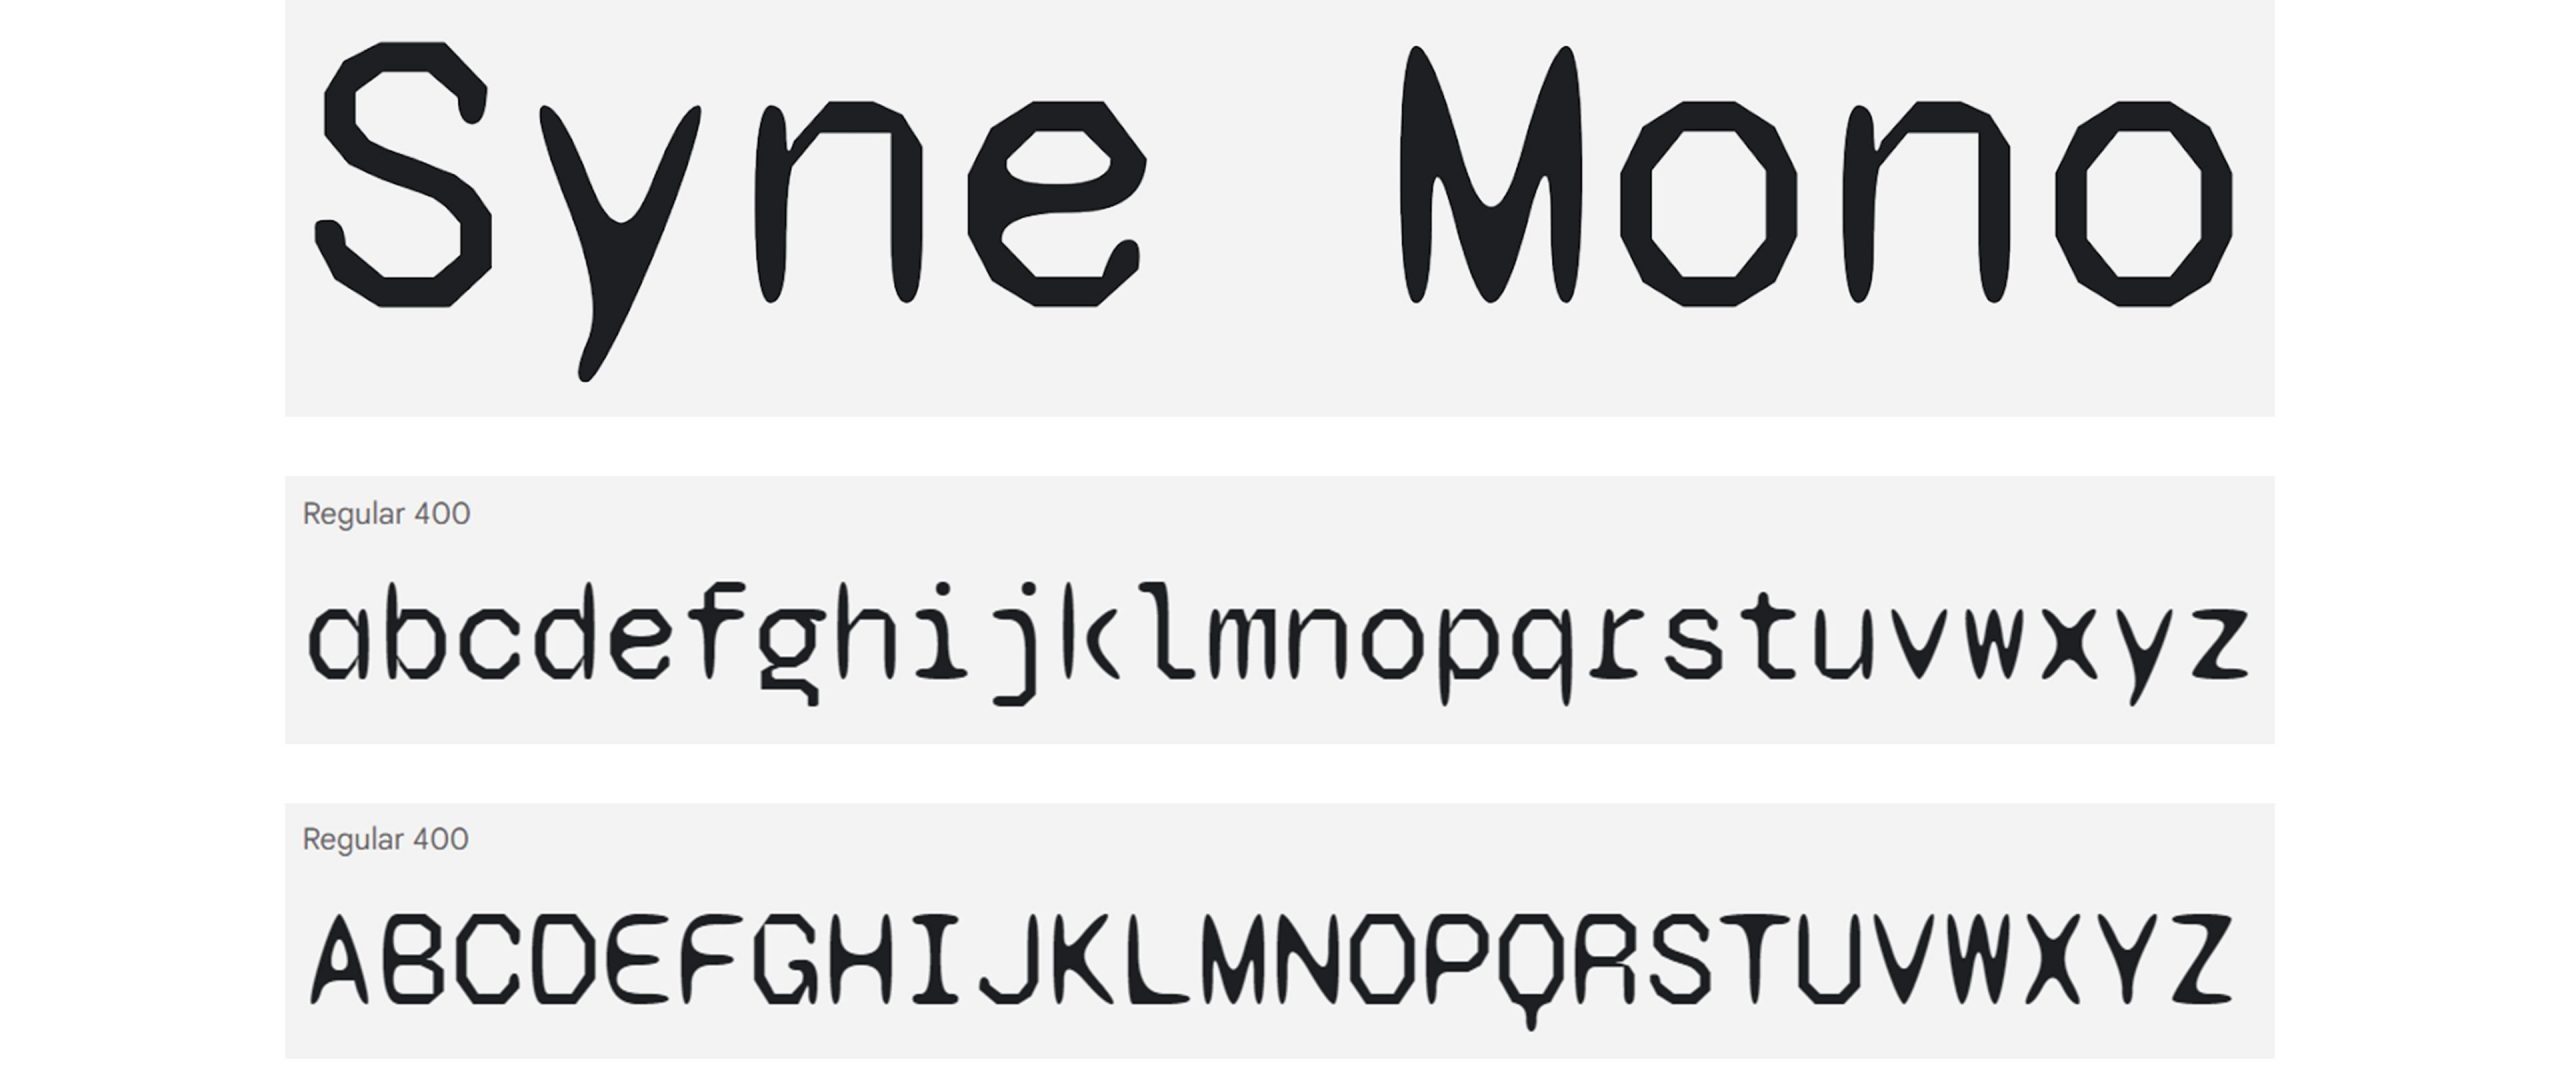 Syne Mono screenshot Google Slides font A to Z